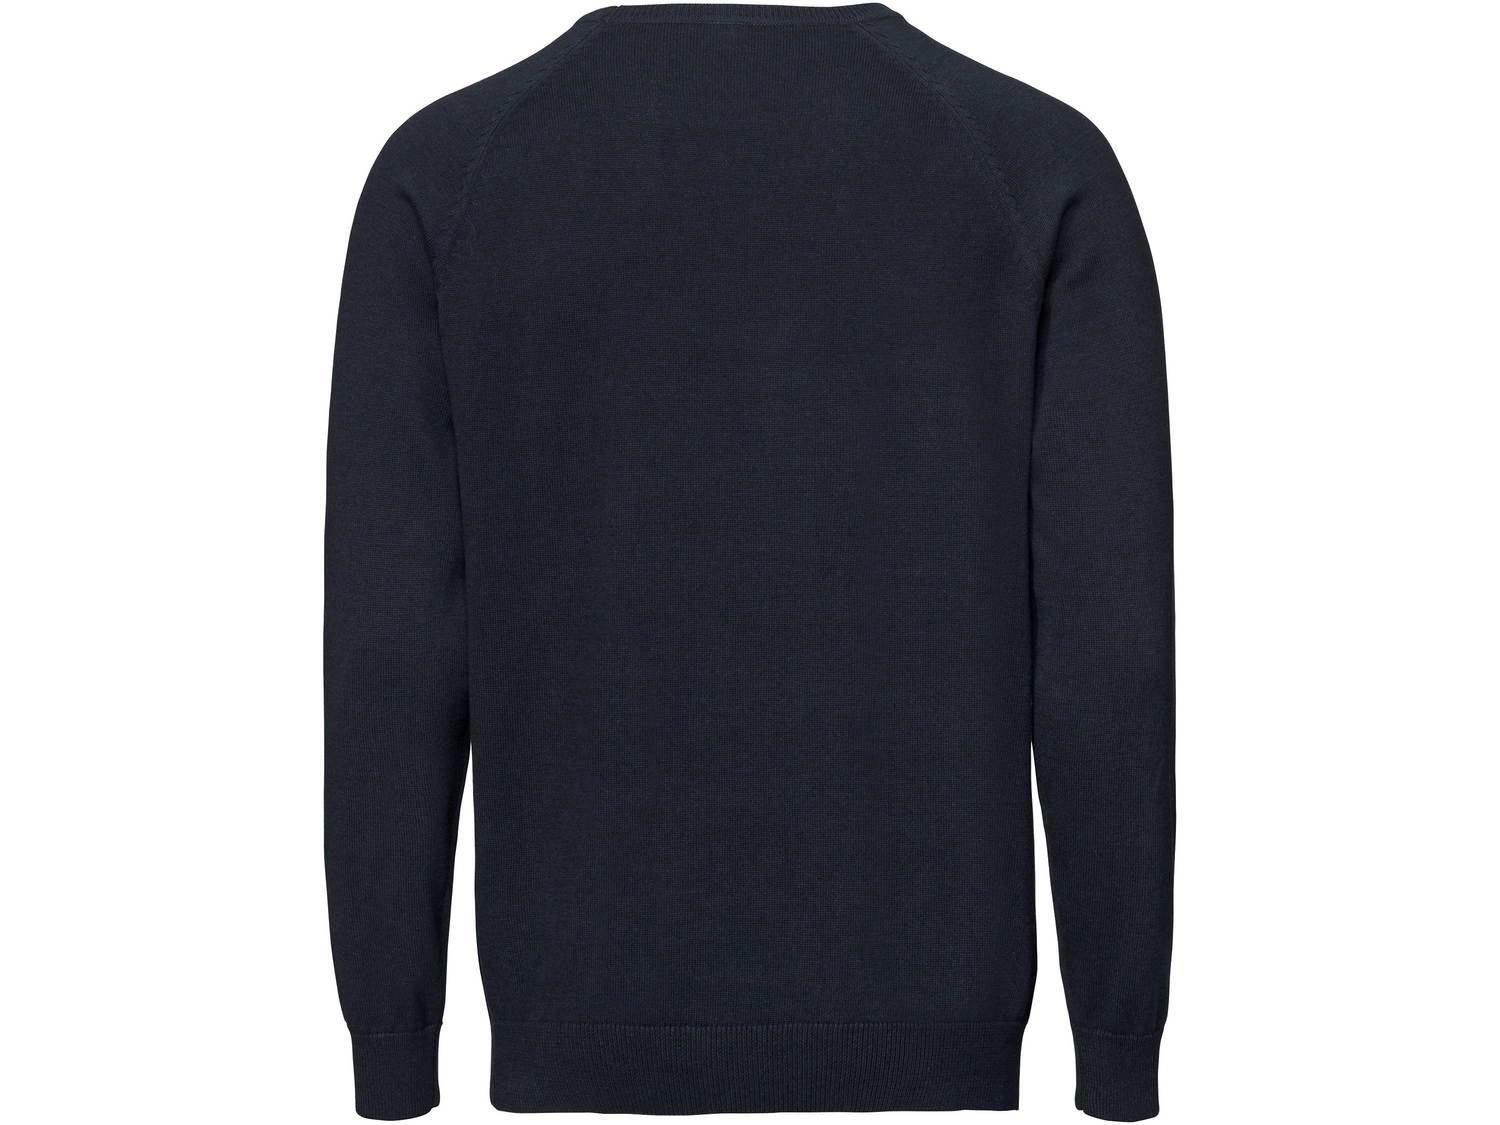 Sweter z biobawełny Livergy, cena 34,99 PLN 
- przyjemny dla skóry dzięki biobawełnie
- ...